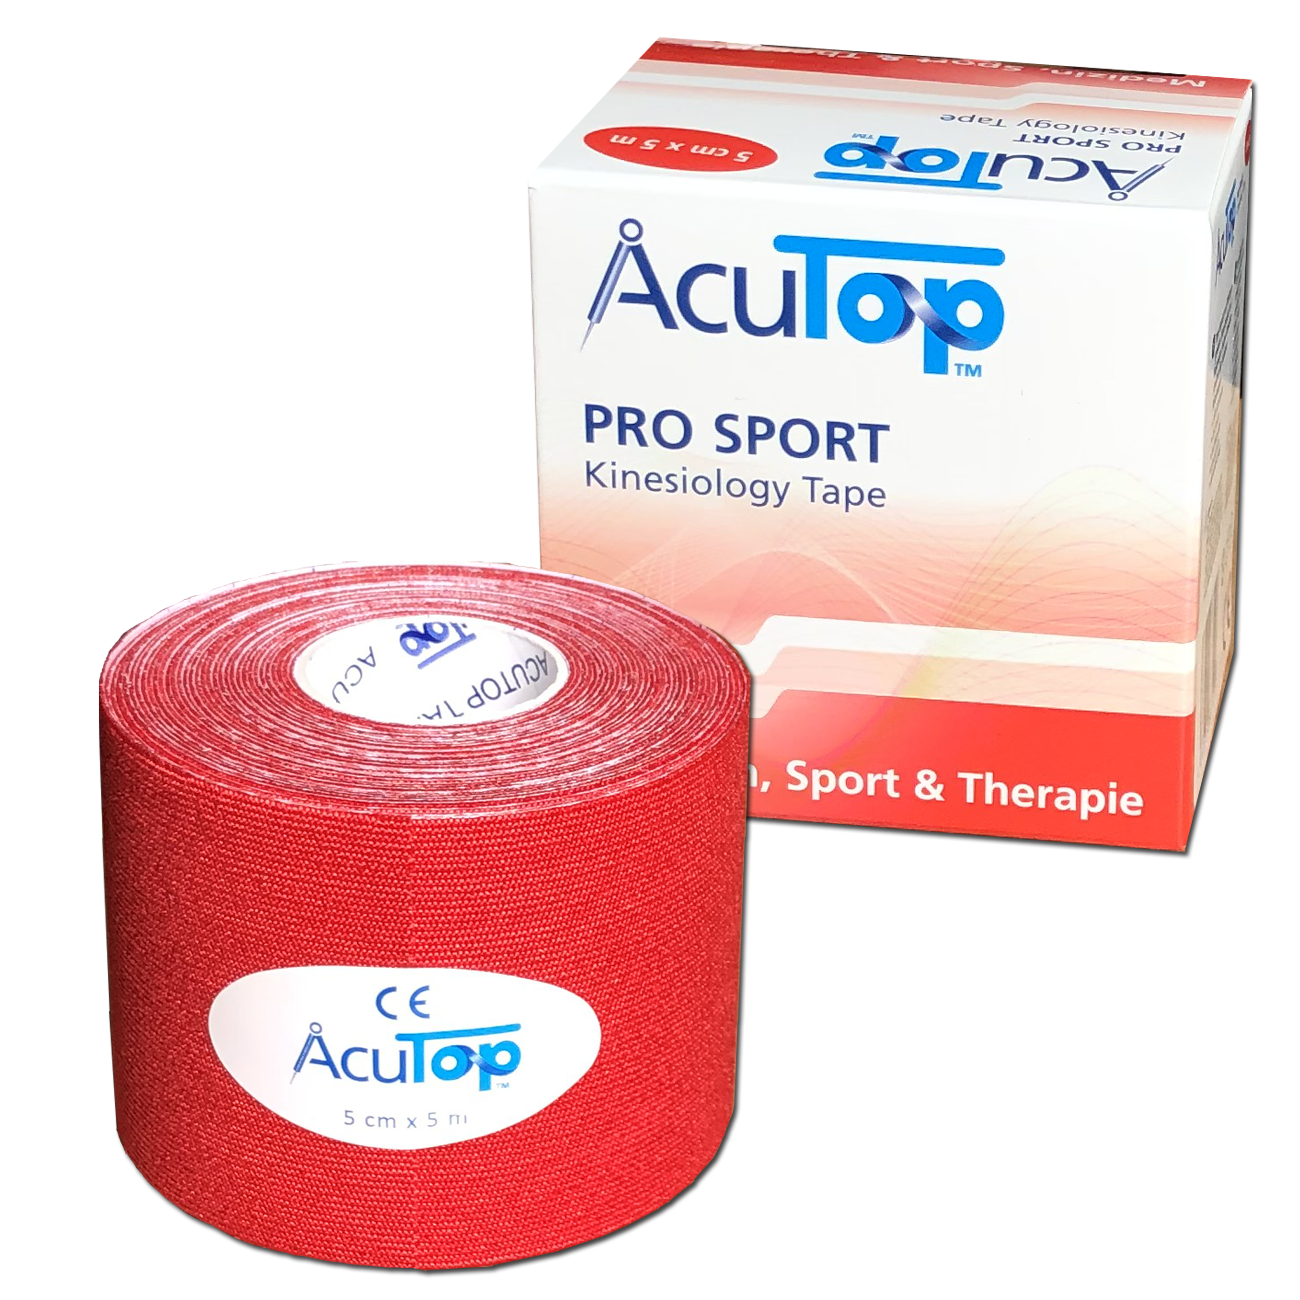 AcuTop Pro Sport - De beste sporttape - Rood - 5cm x 5m - Intertaping.nl